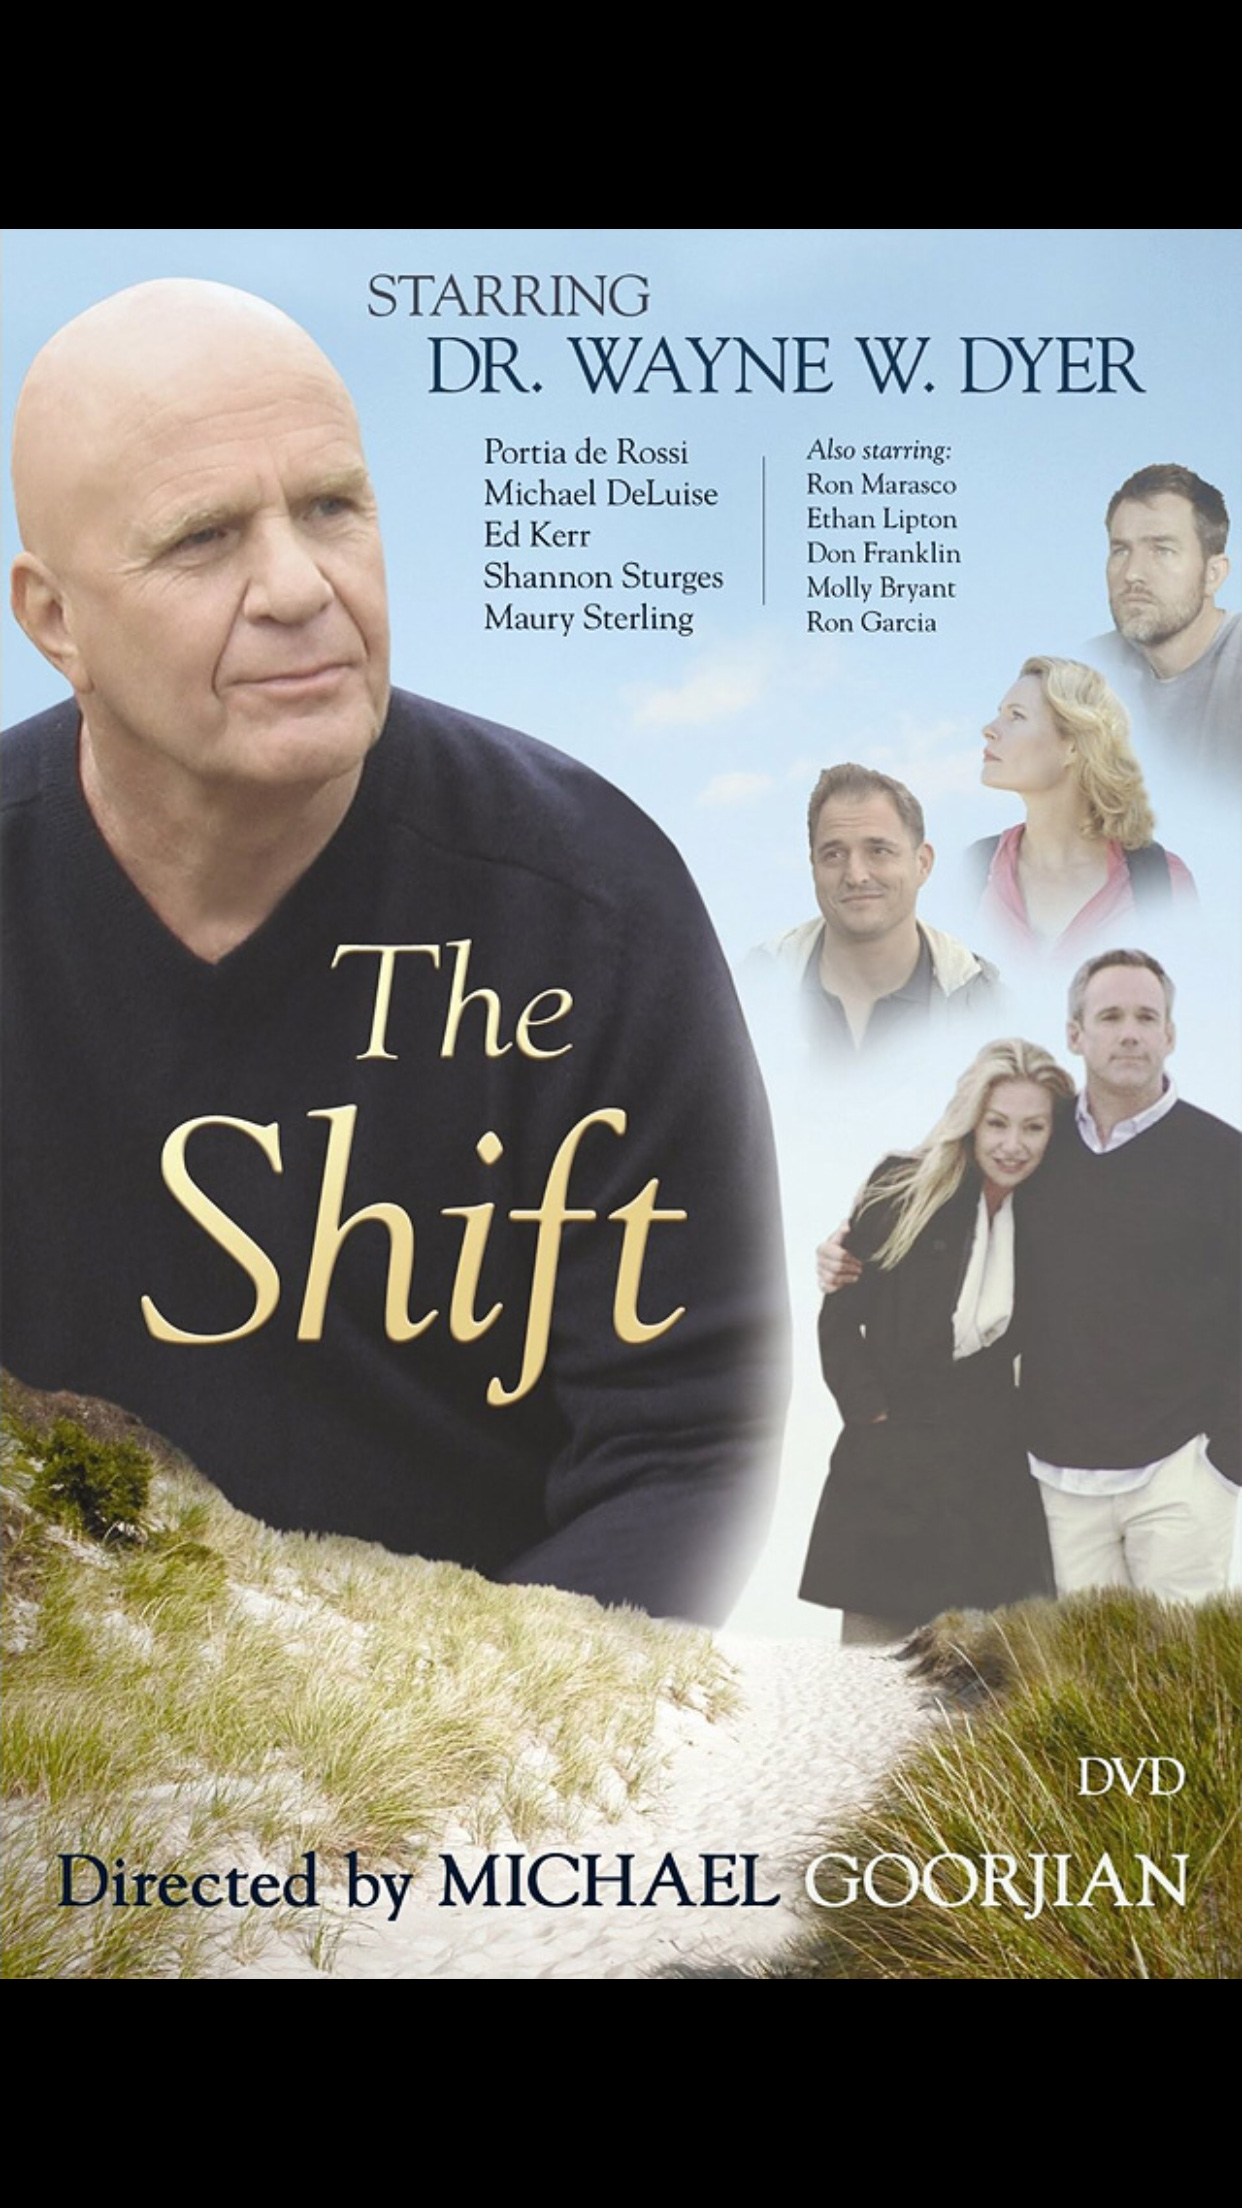 The Shift (2009) Screenshot 1 